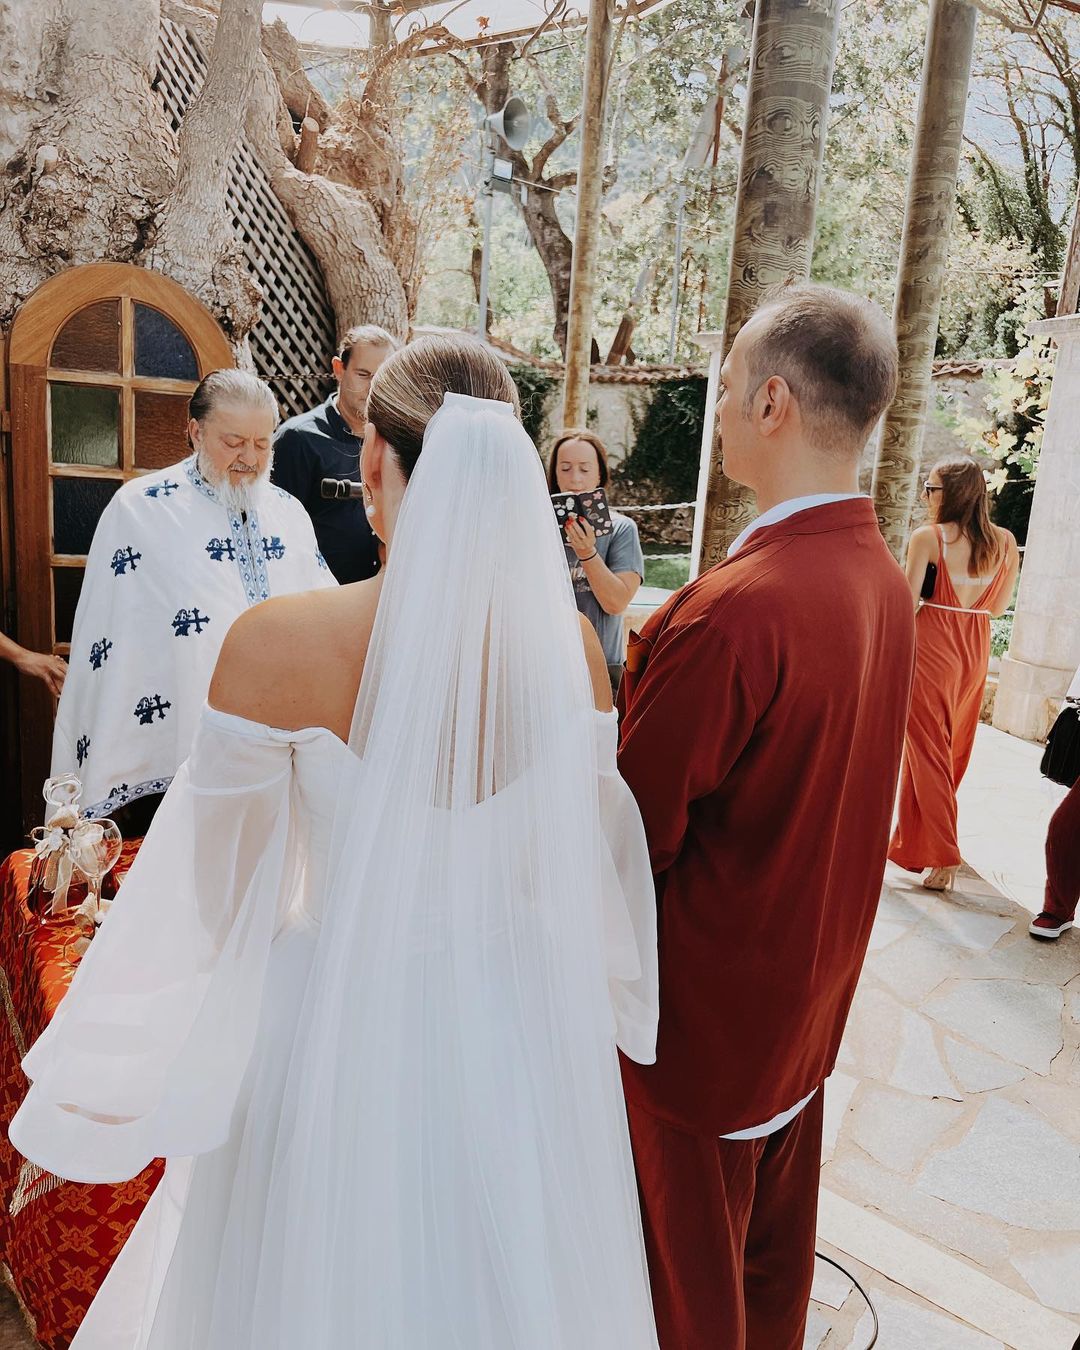 Ειρήνη Ψυχράμη – Λάμπρος Κτέναβος: Παντρεύτηκαν με θρησκευτικό γάμο σε γραφικό χωριό της Αχαΐας – Φωτογραφίες